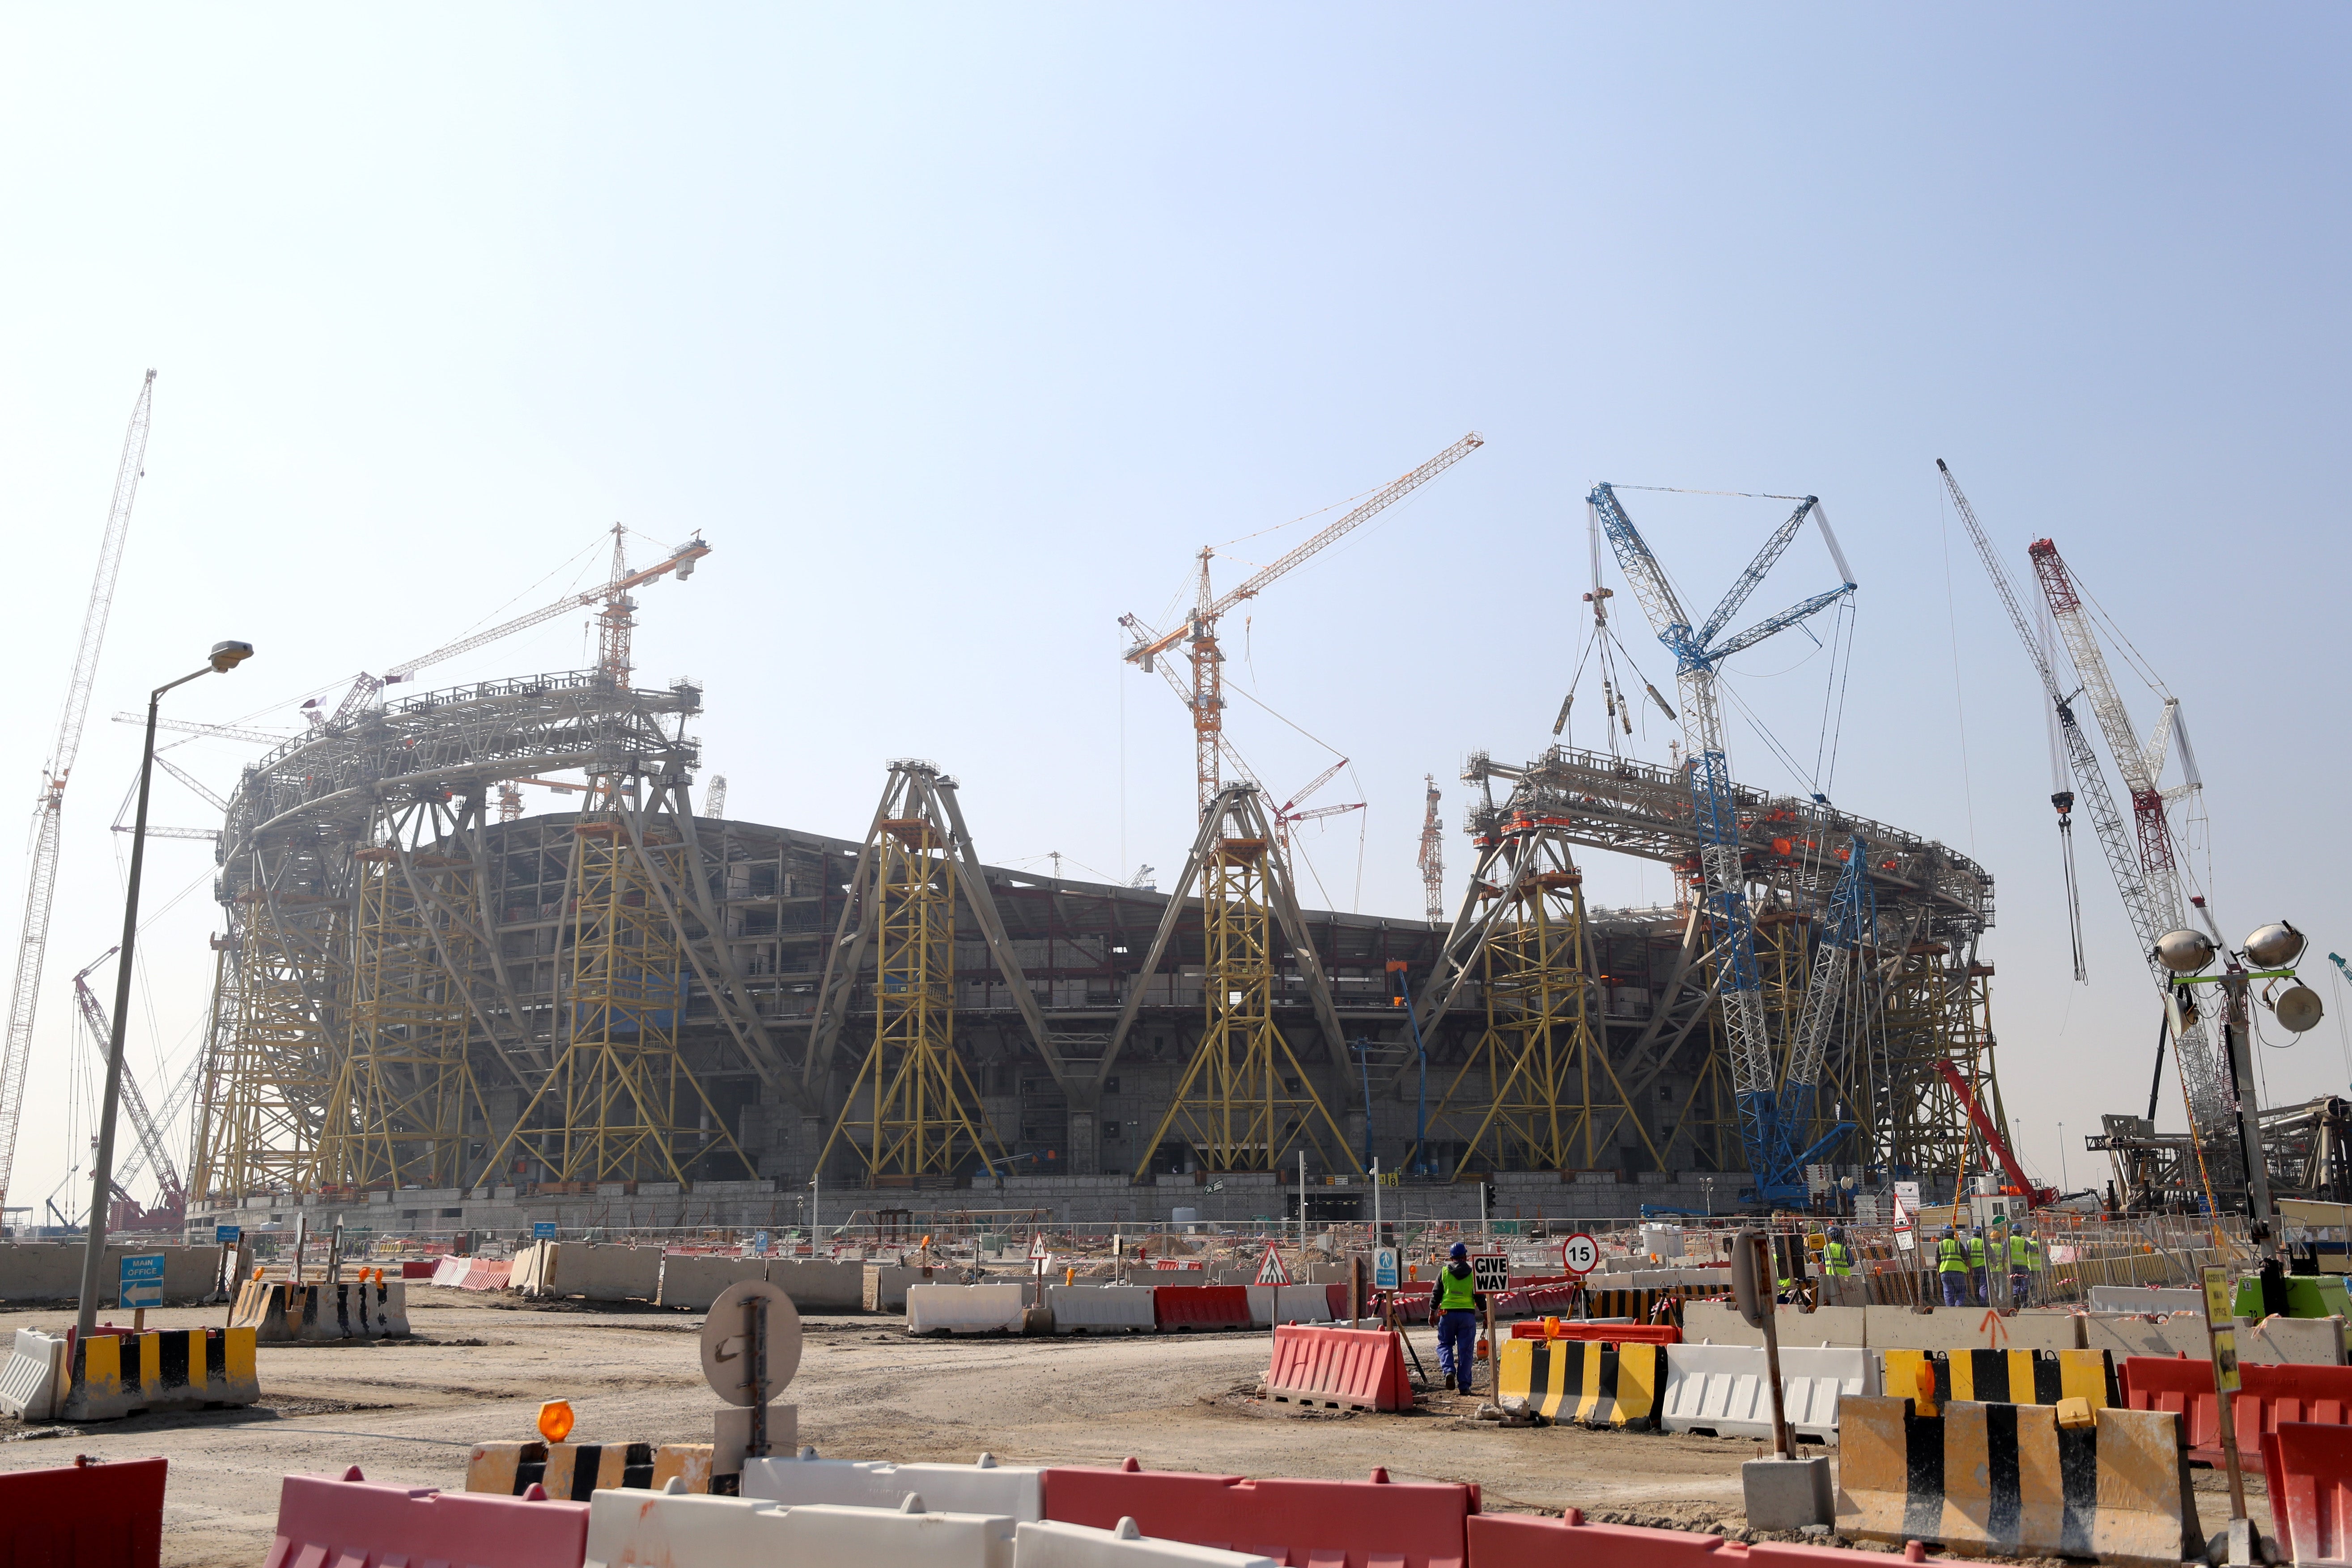 Construction work underway at the Lusail Stadium in Qatar